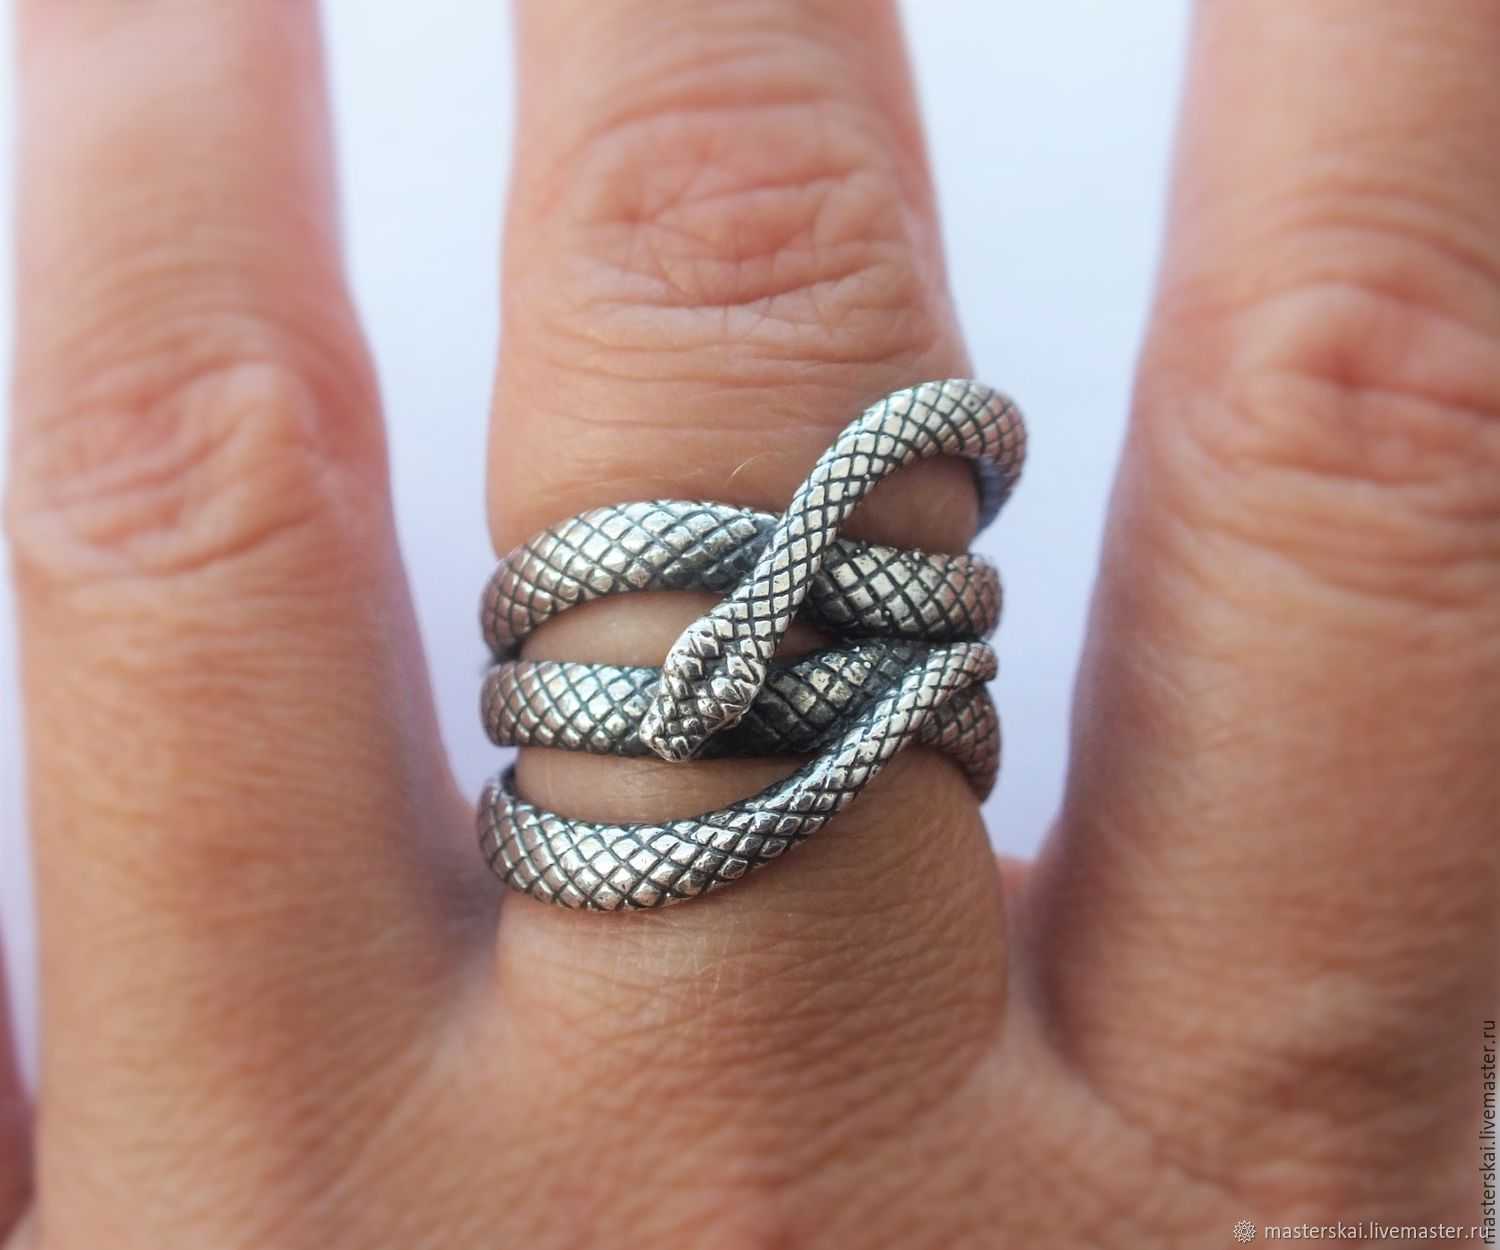 Кольцо в виде змеи серебро что означает